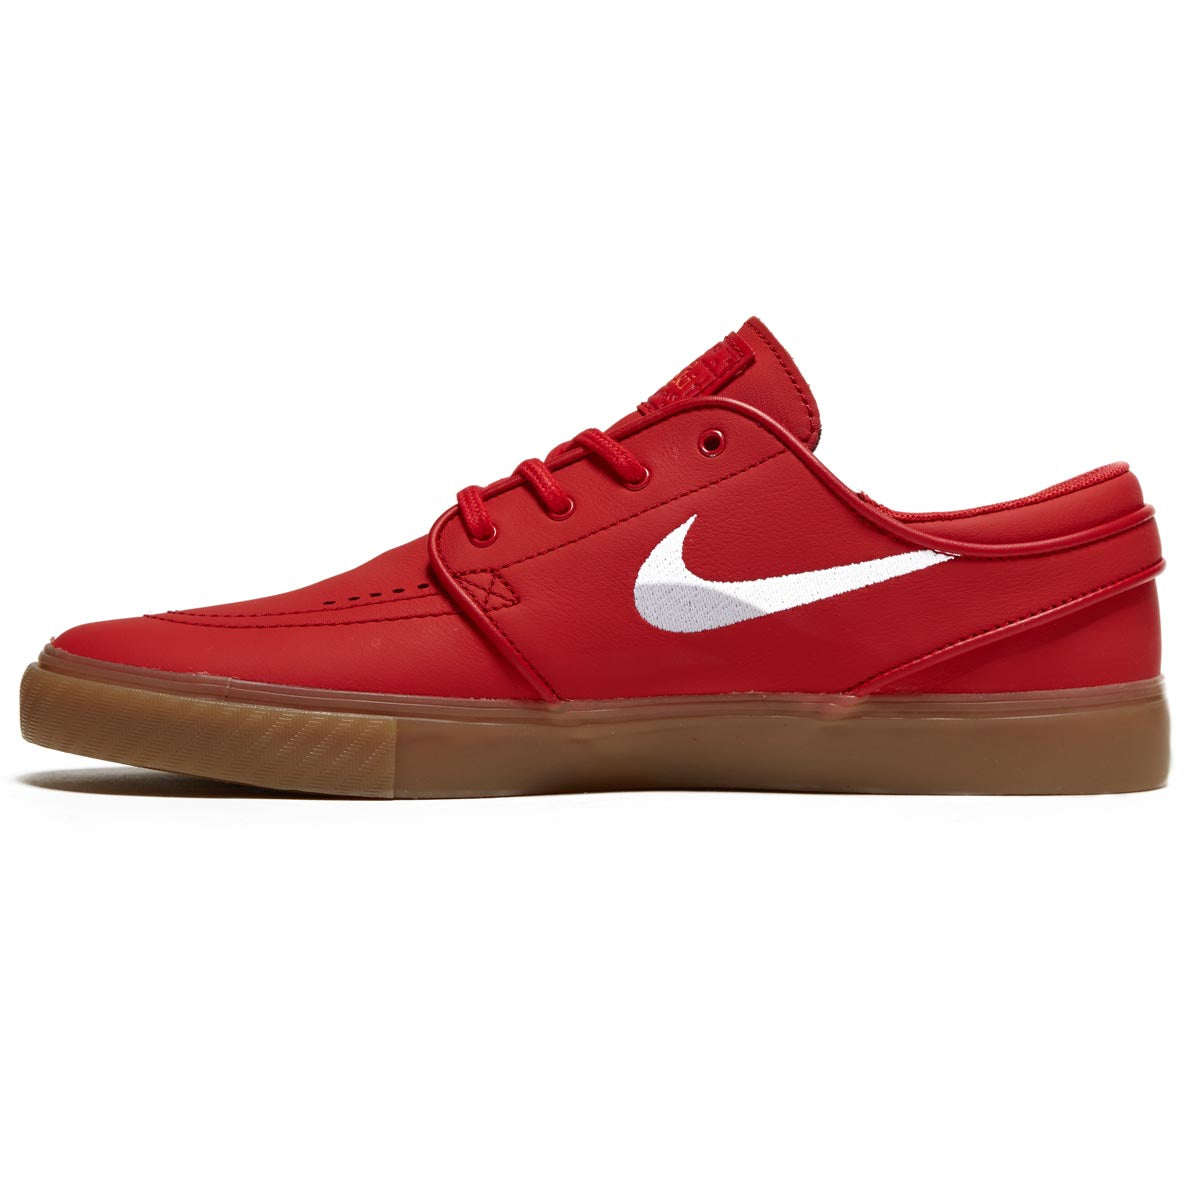 Nike SB Zoom Janoski OG+ Shoes - University Red/White/University Red image 2